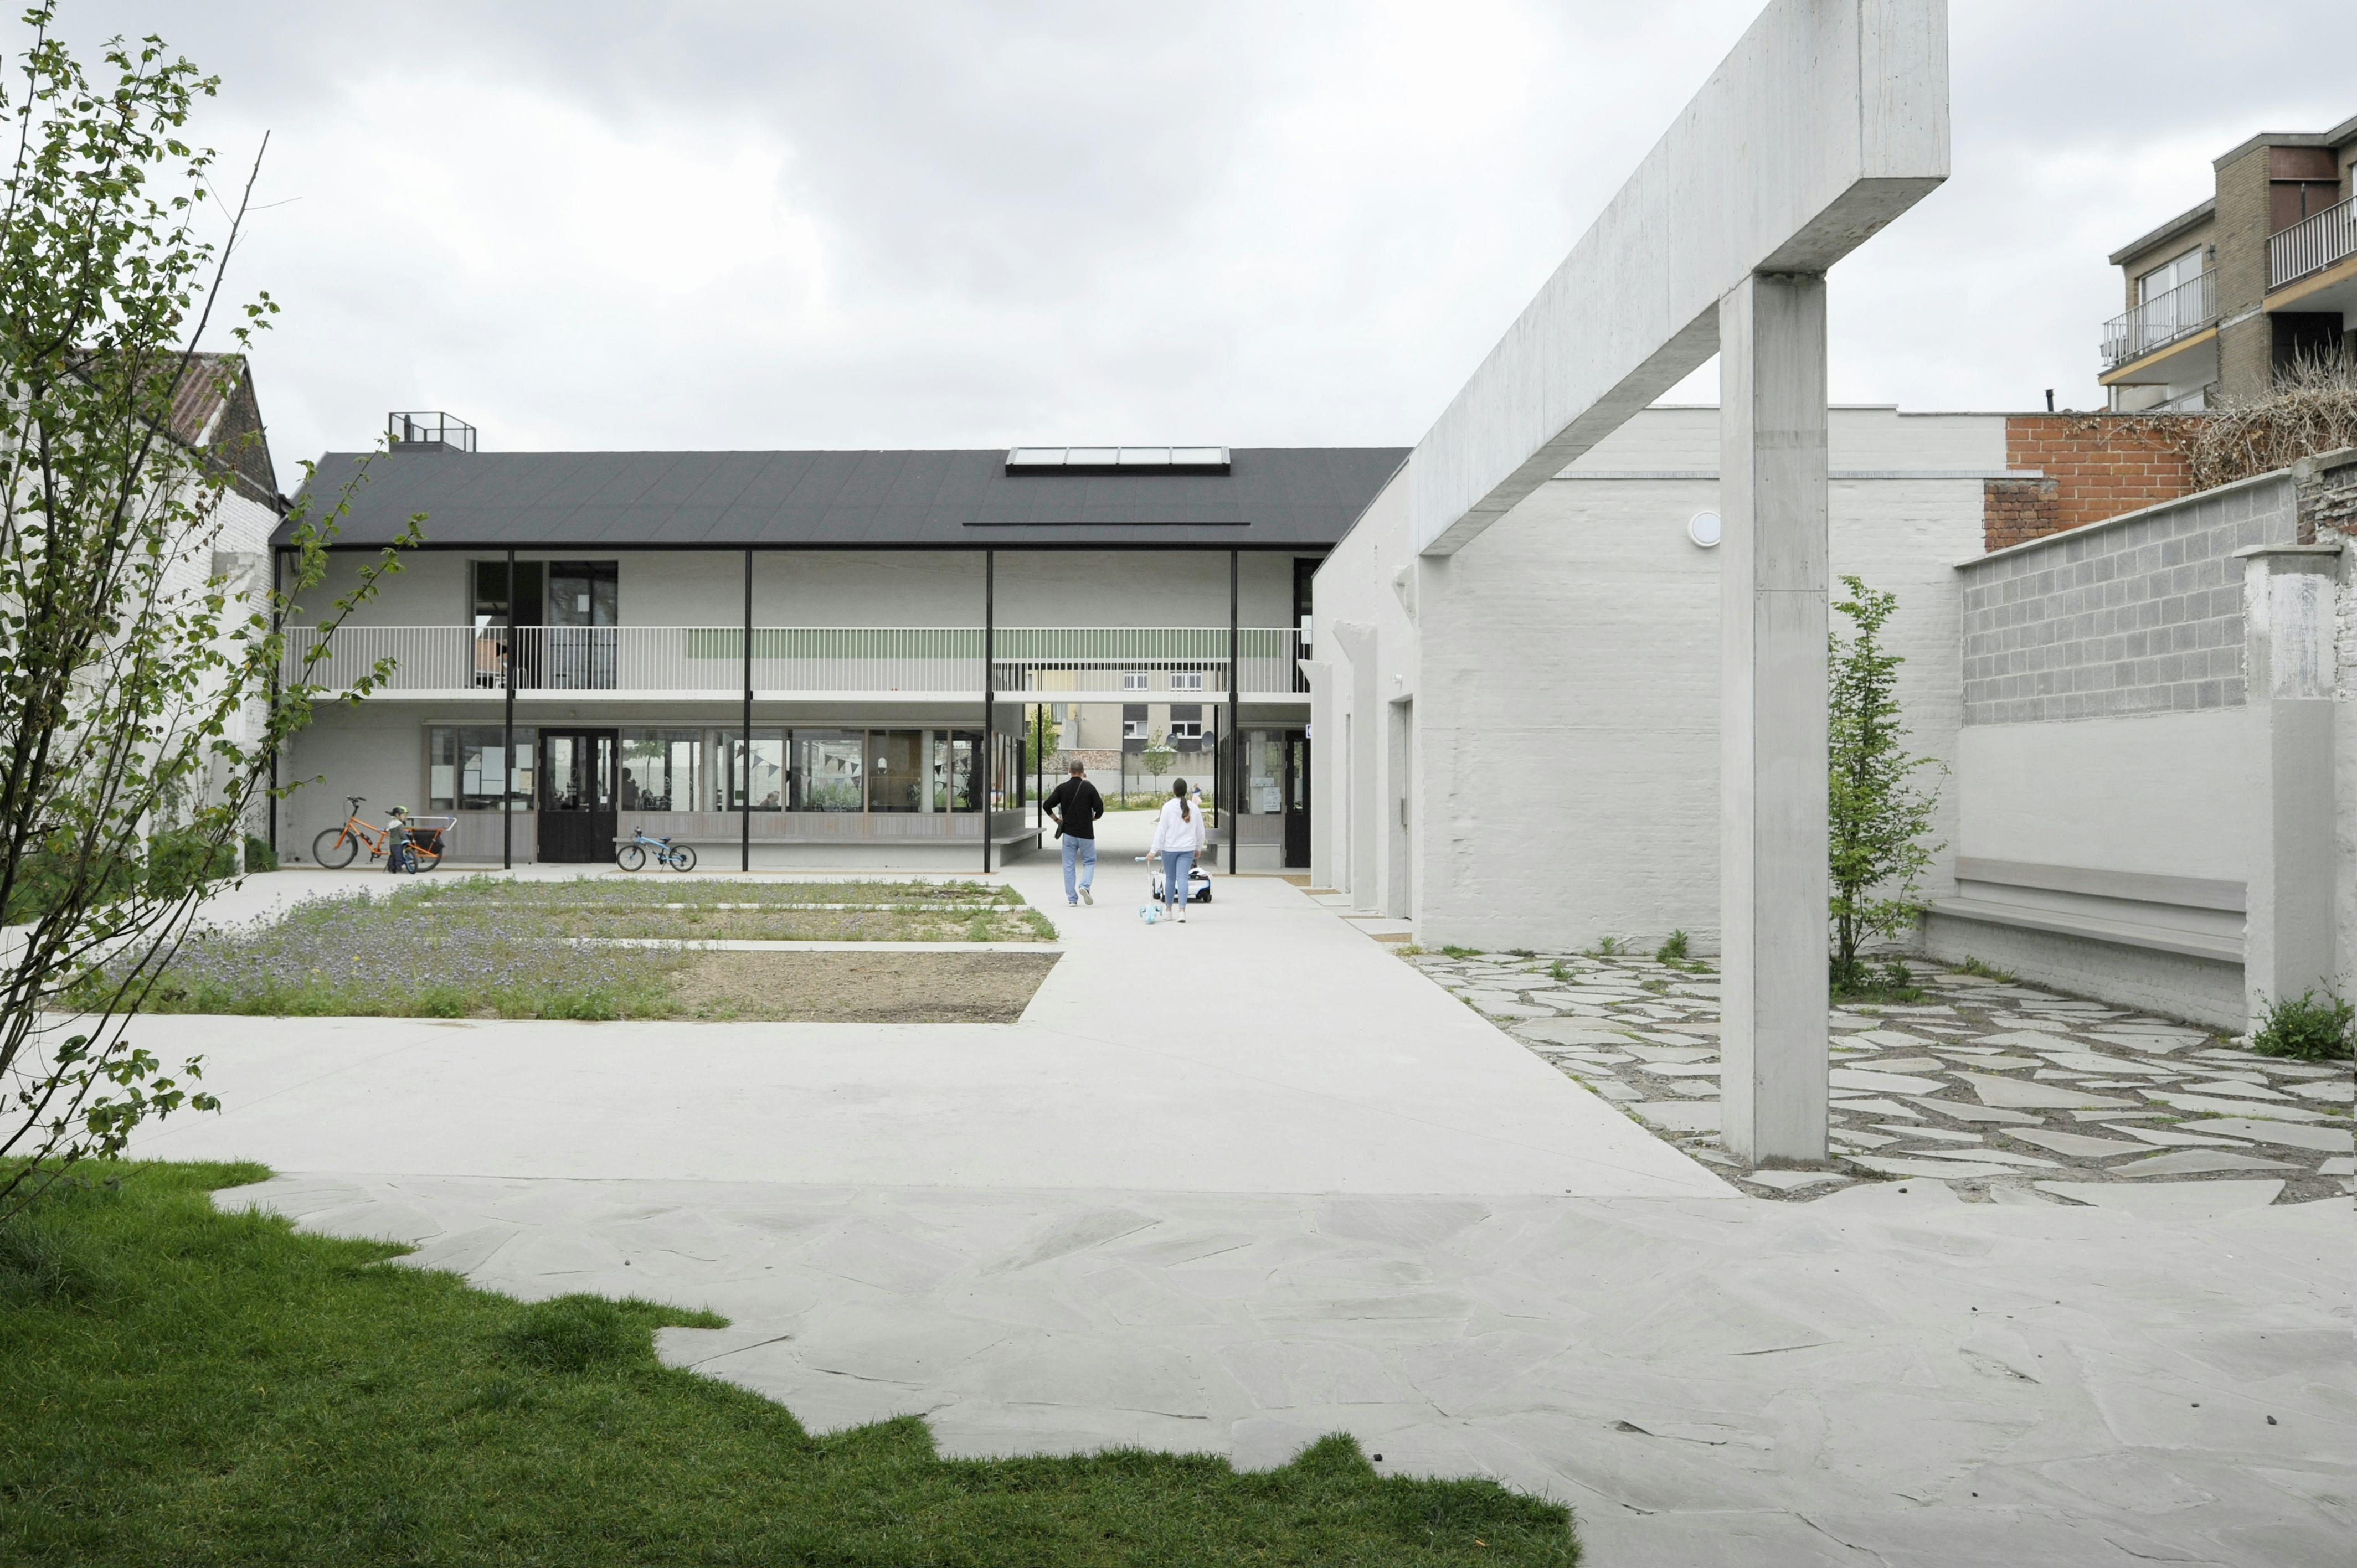 Standaertsite (Ledeberg) Gent – Ontwerpteam AE / Carton123 / Murmuur architecten is een van de genomineerden voor de categorie Mixed Use van de Belgian Building Awards. Beeld Petra Decouttere
